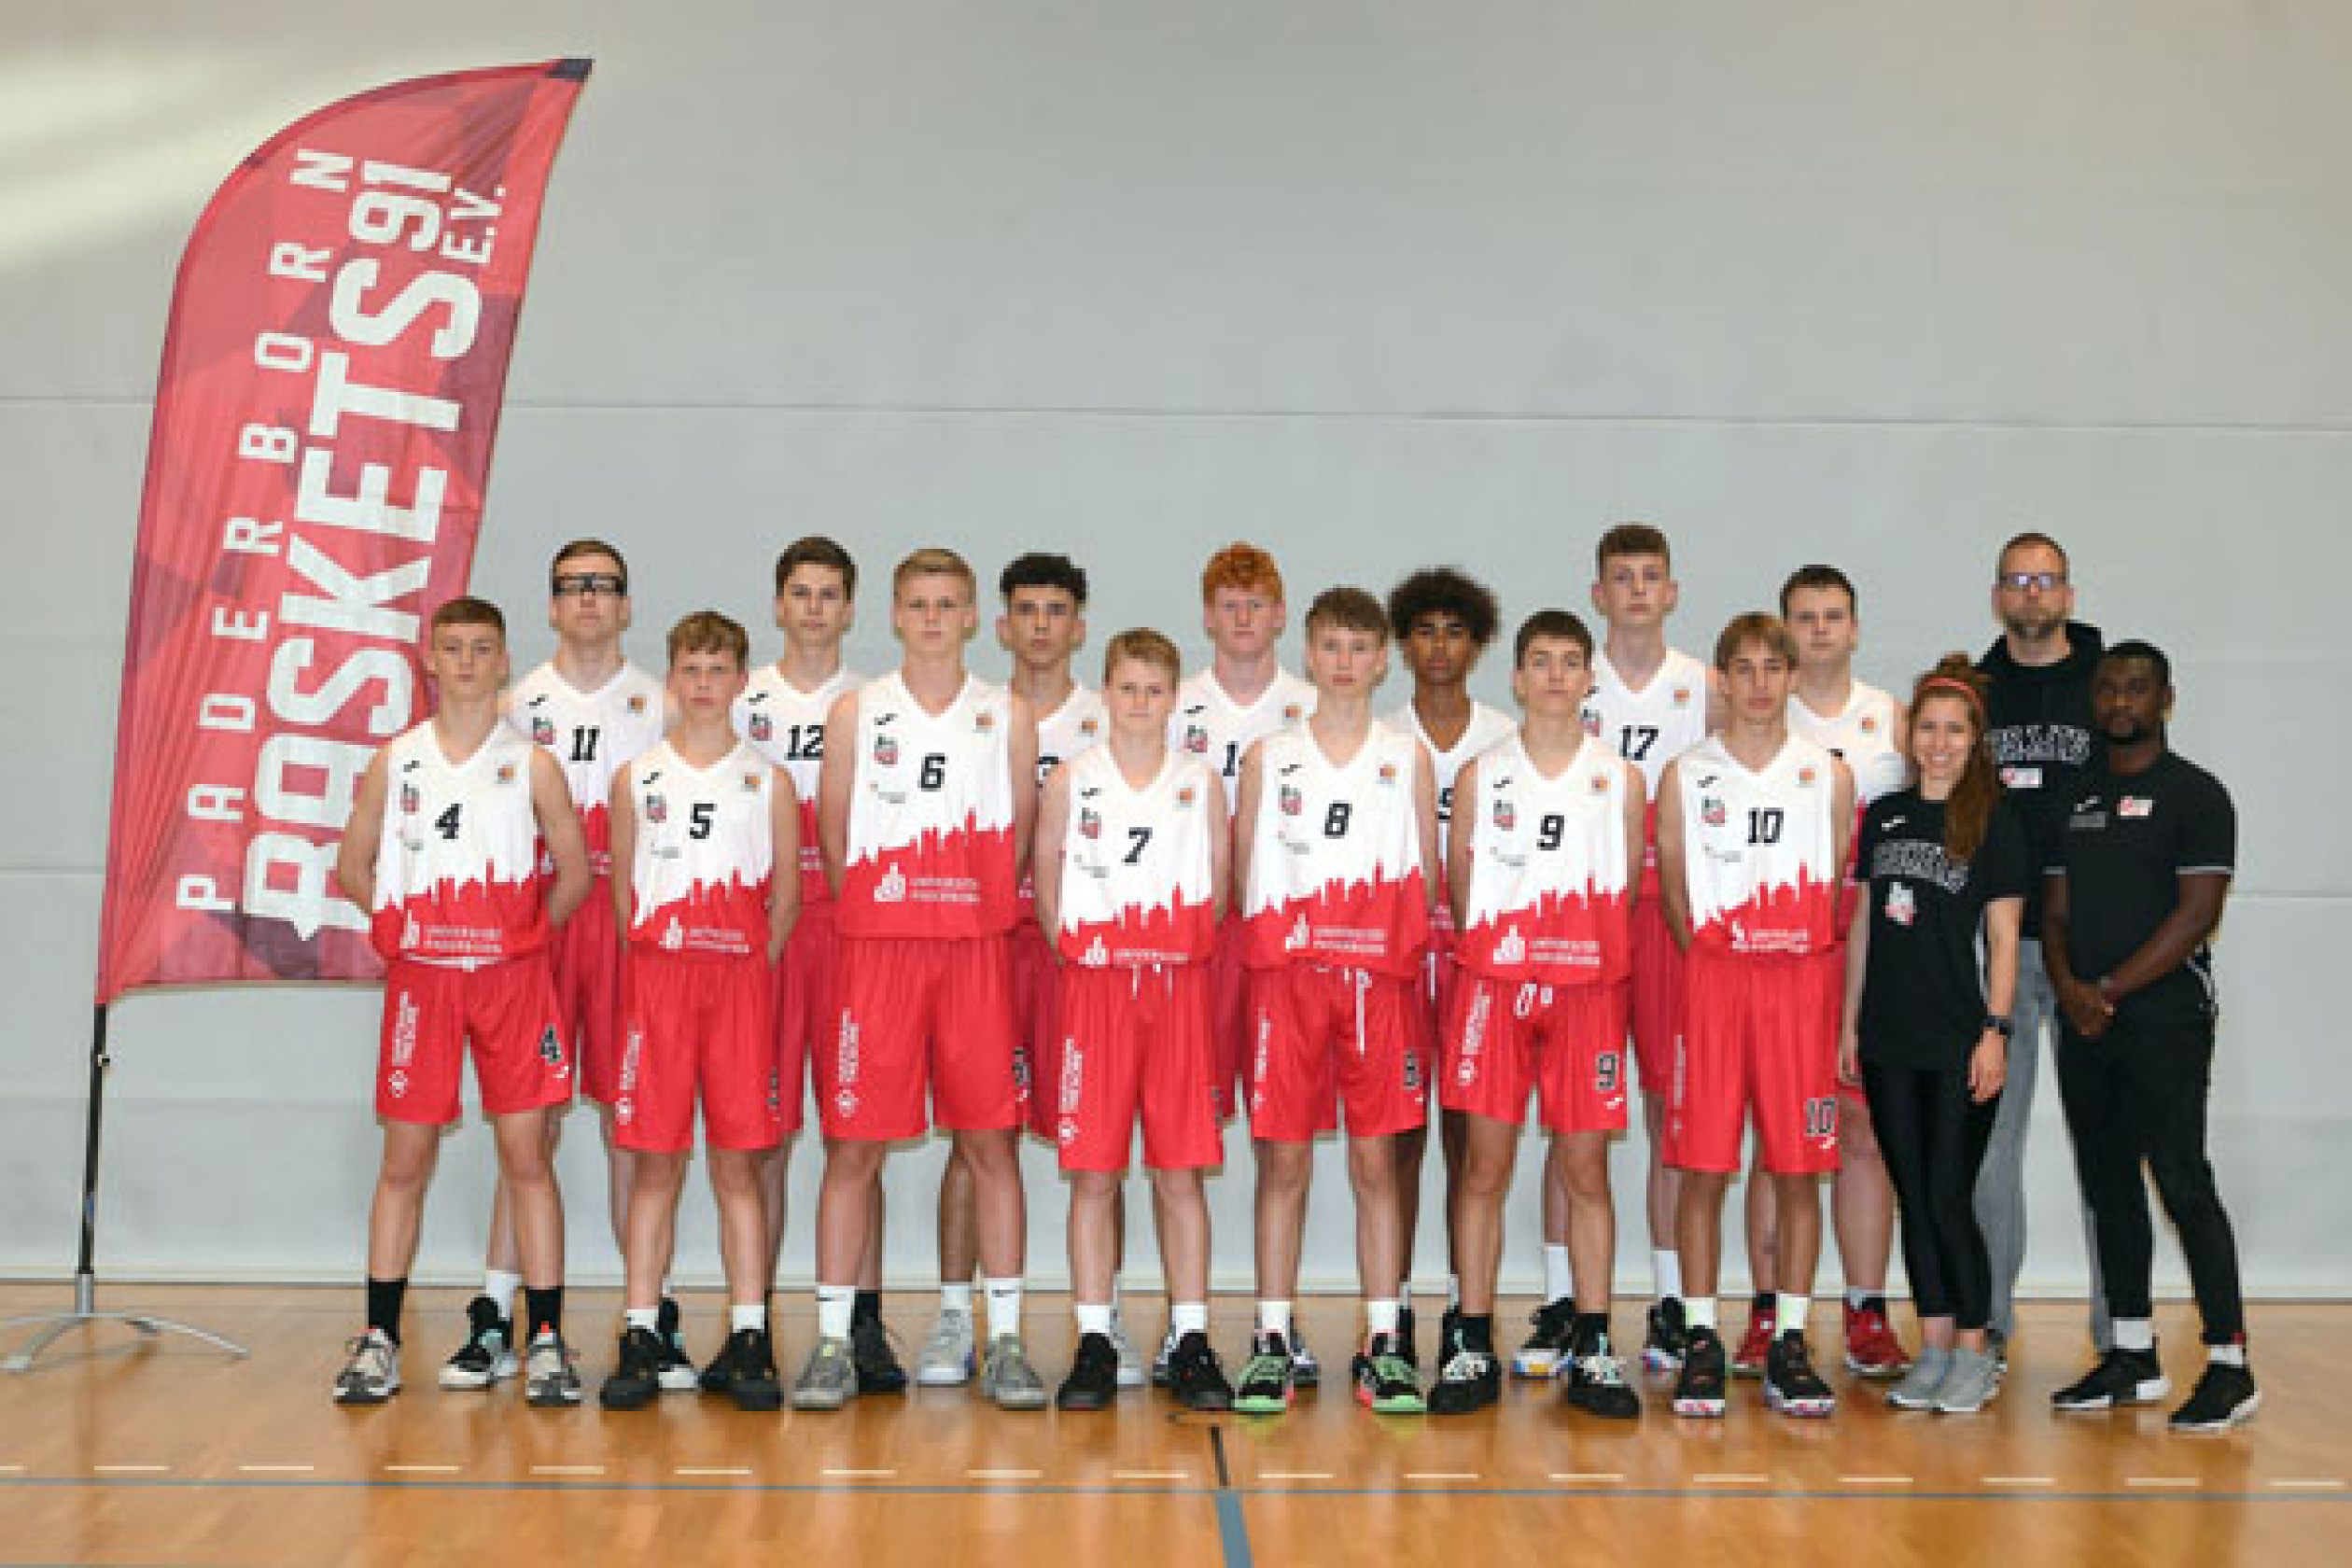 Mannschaftsfoto Uni Baskets Paderborn